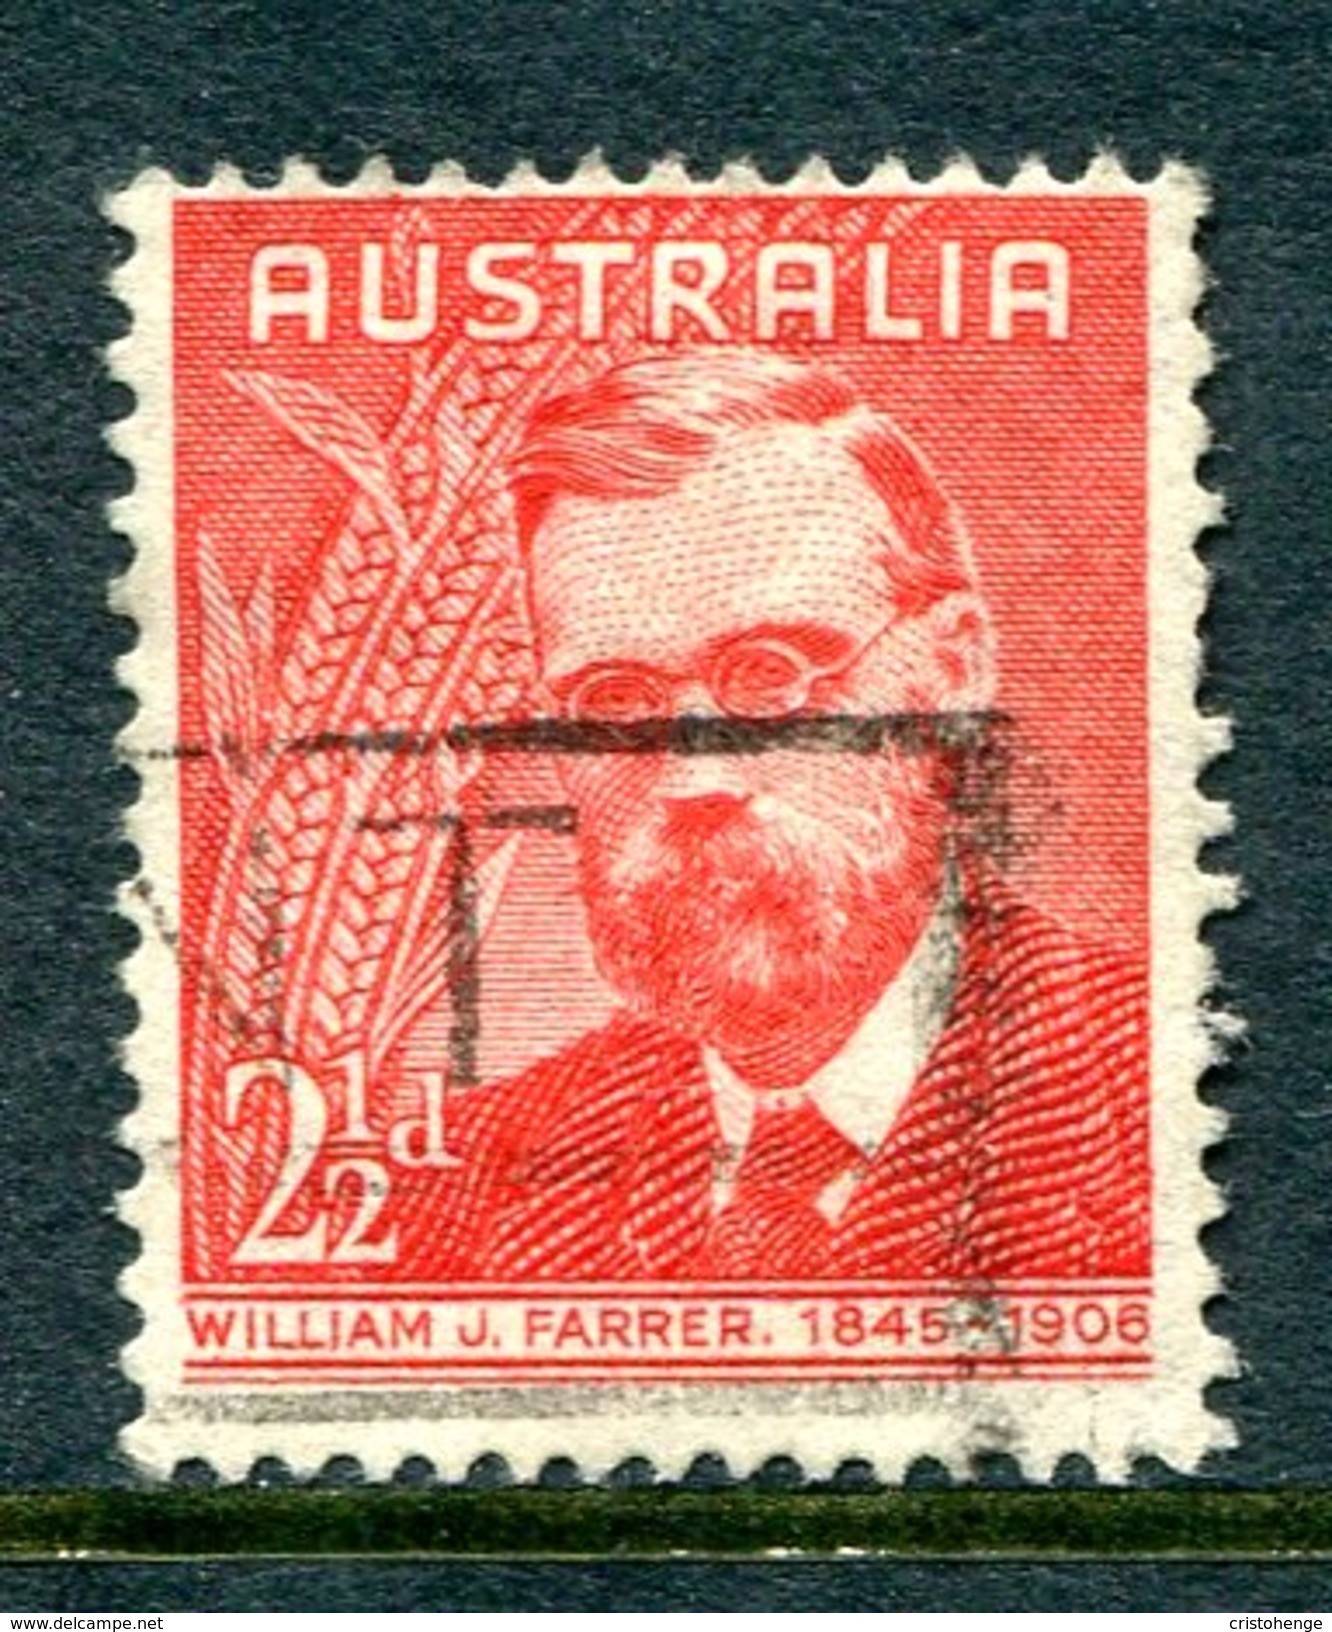 Australia 1948 William J. Farrer Commemoration Used (SG 225) - Gebraucht